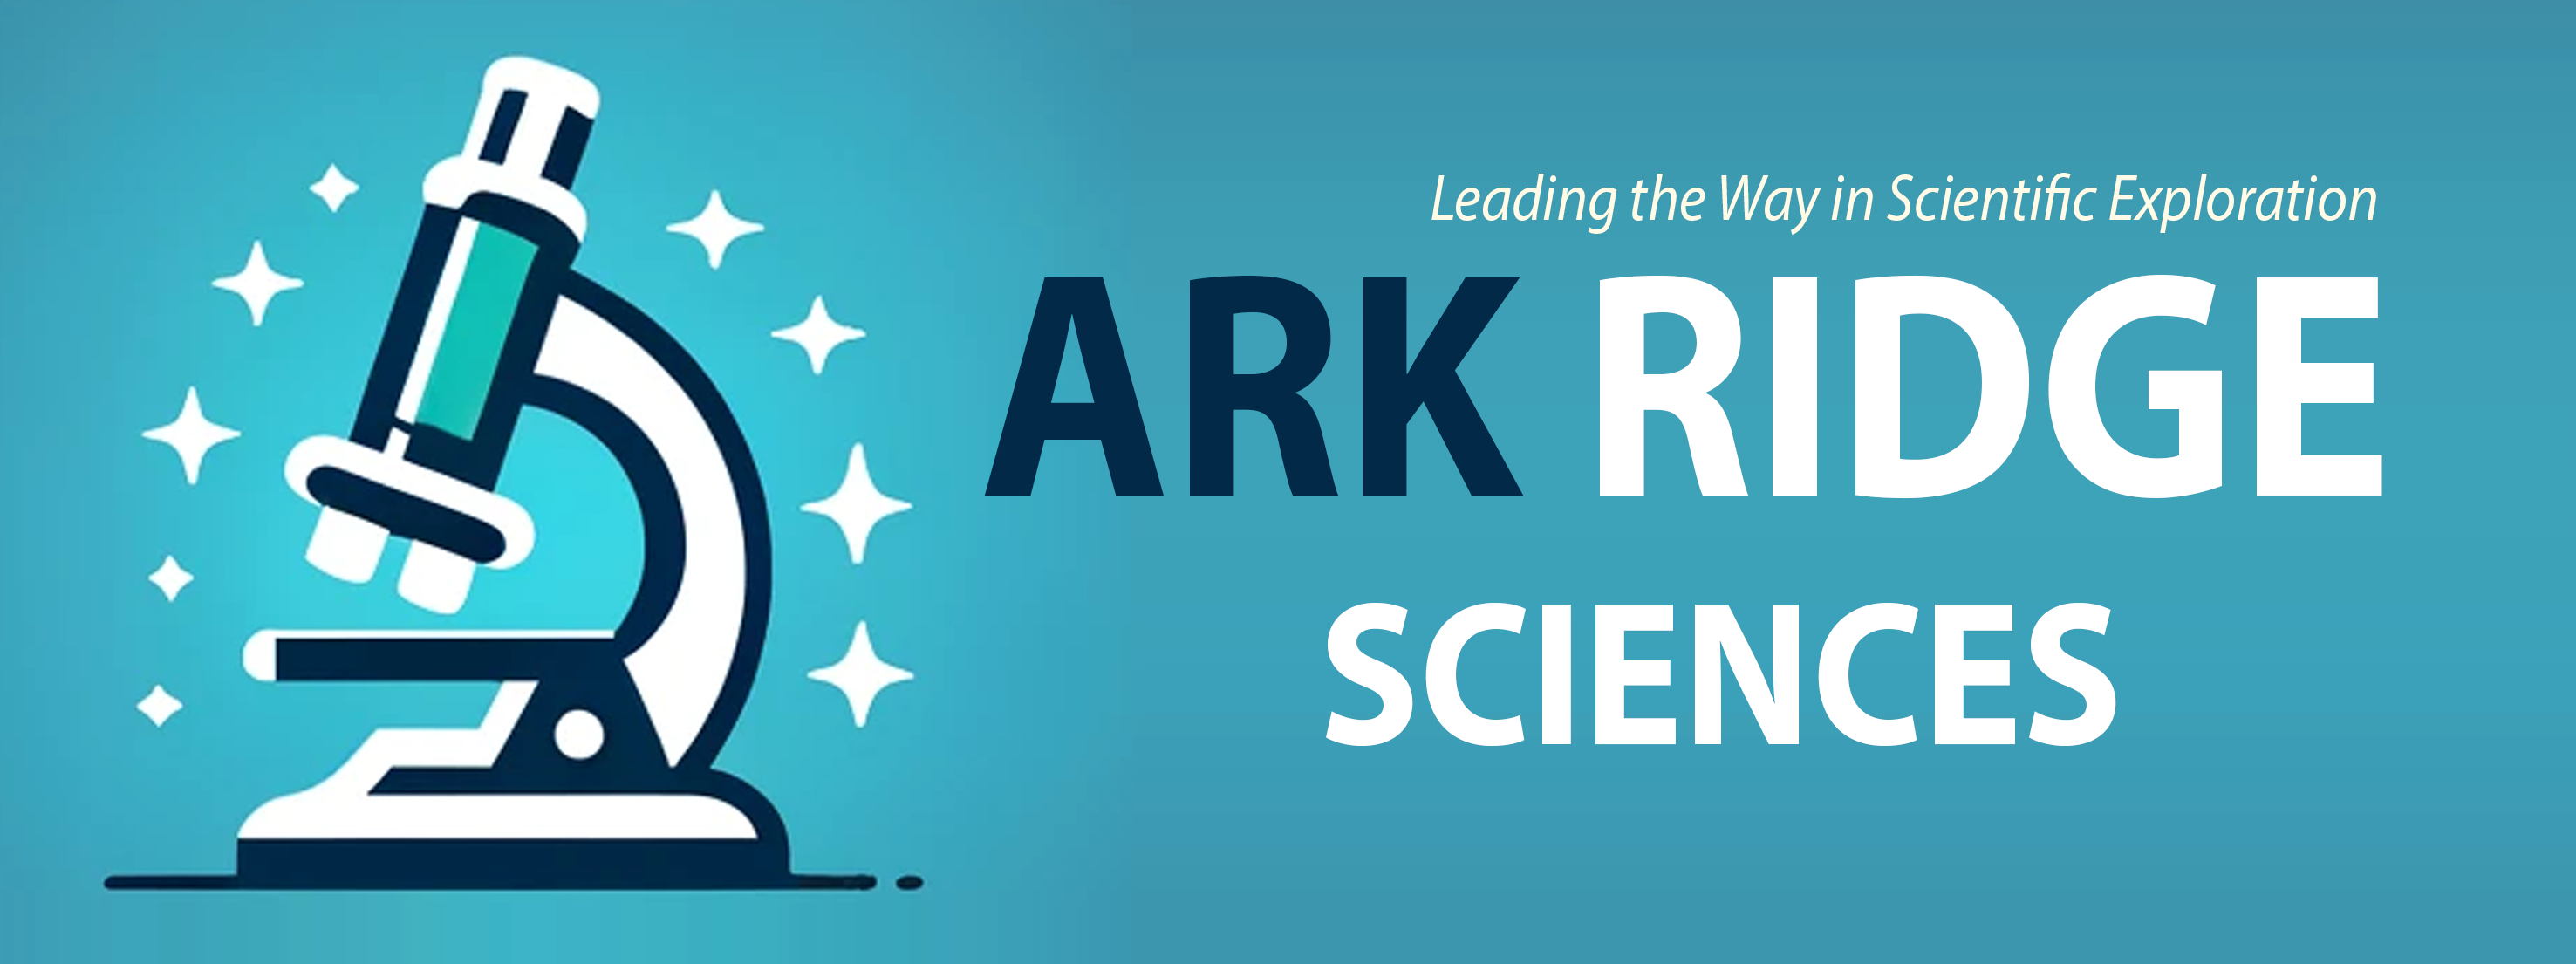 Ark Ridge Sciences